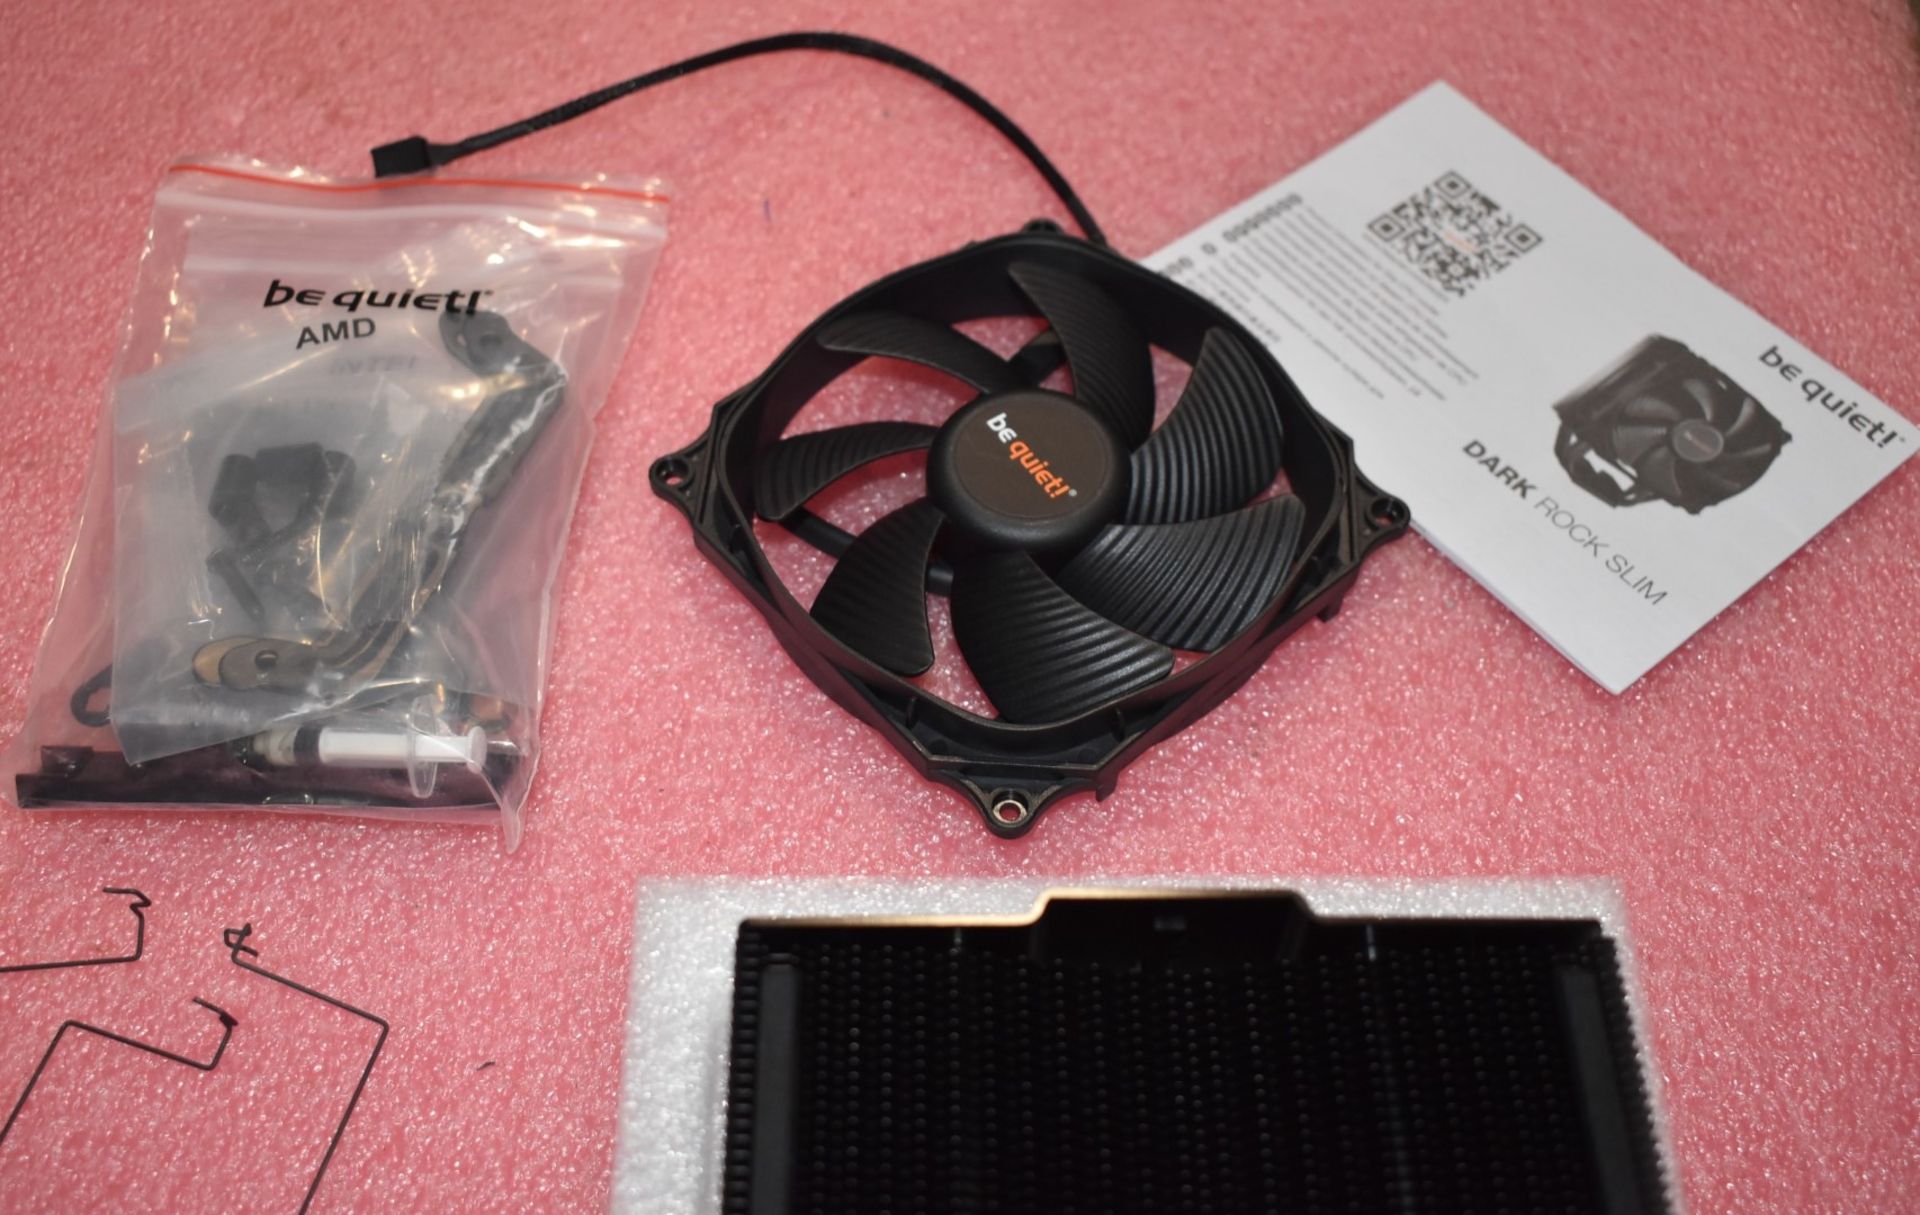 1 x BeQuiet Dark Rock Slim CPU Cooler With 120mm Fan - Image 4 of 8